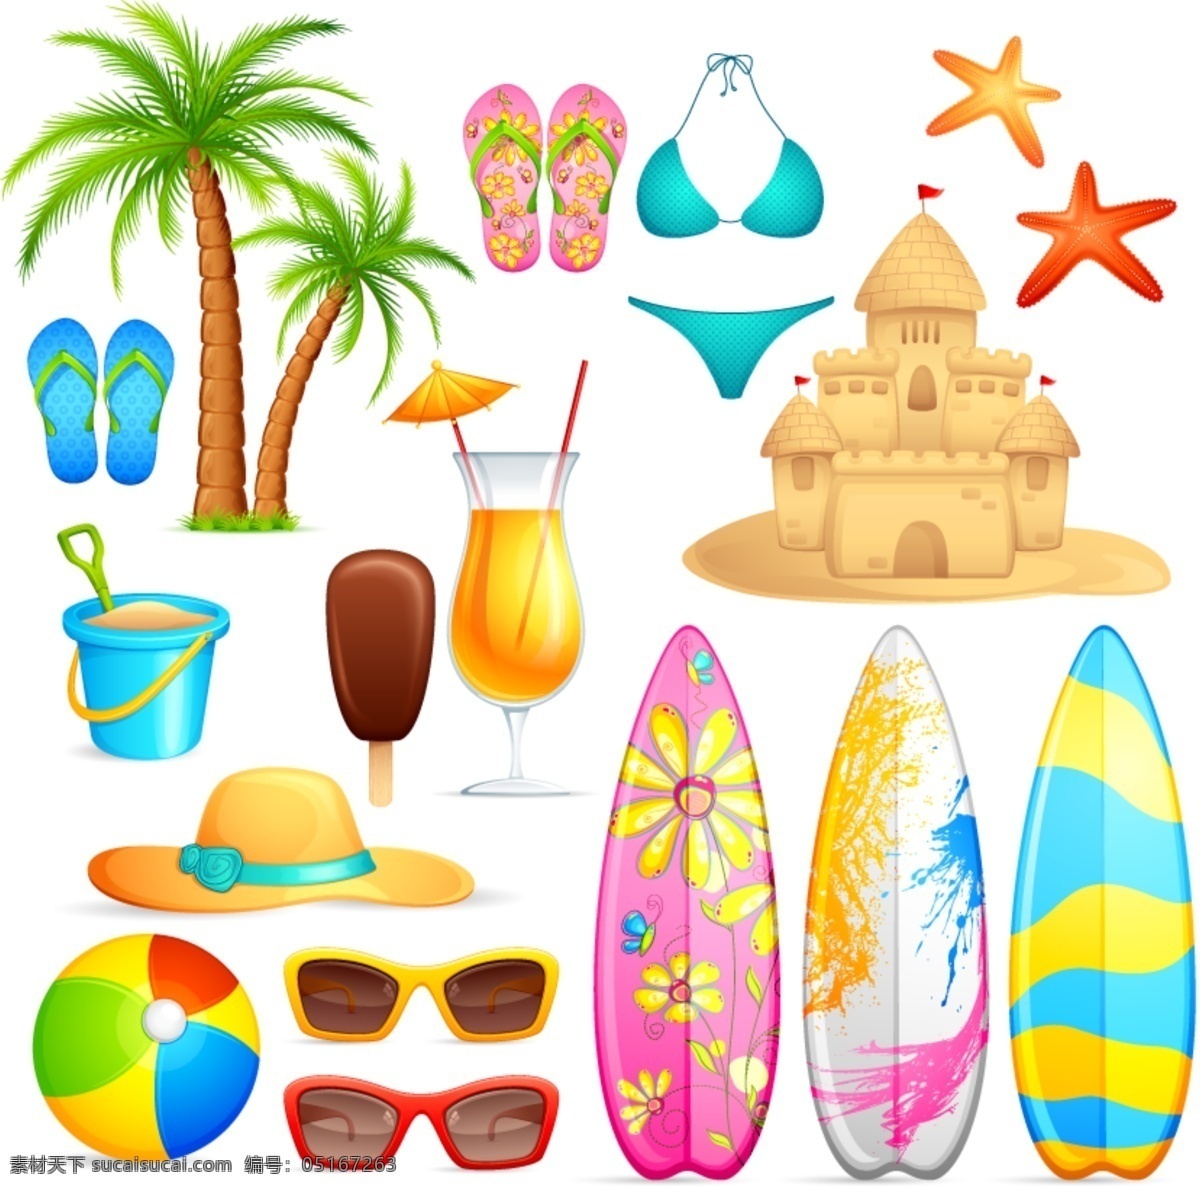 夏季 海报 杯子 果汁 海星 卡通 帽子 皮球 桶 夏季海报素材 鞋 眼镜 椰树 沙堡 其他海报设计